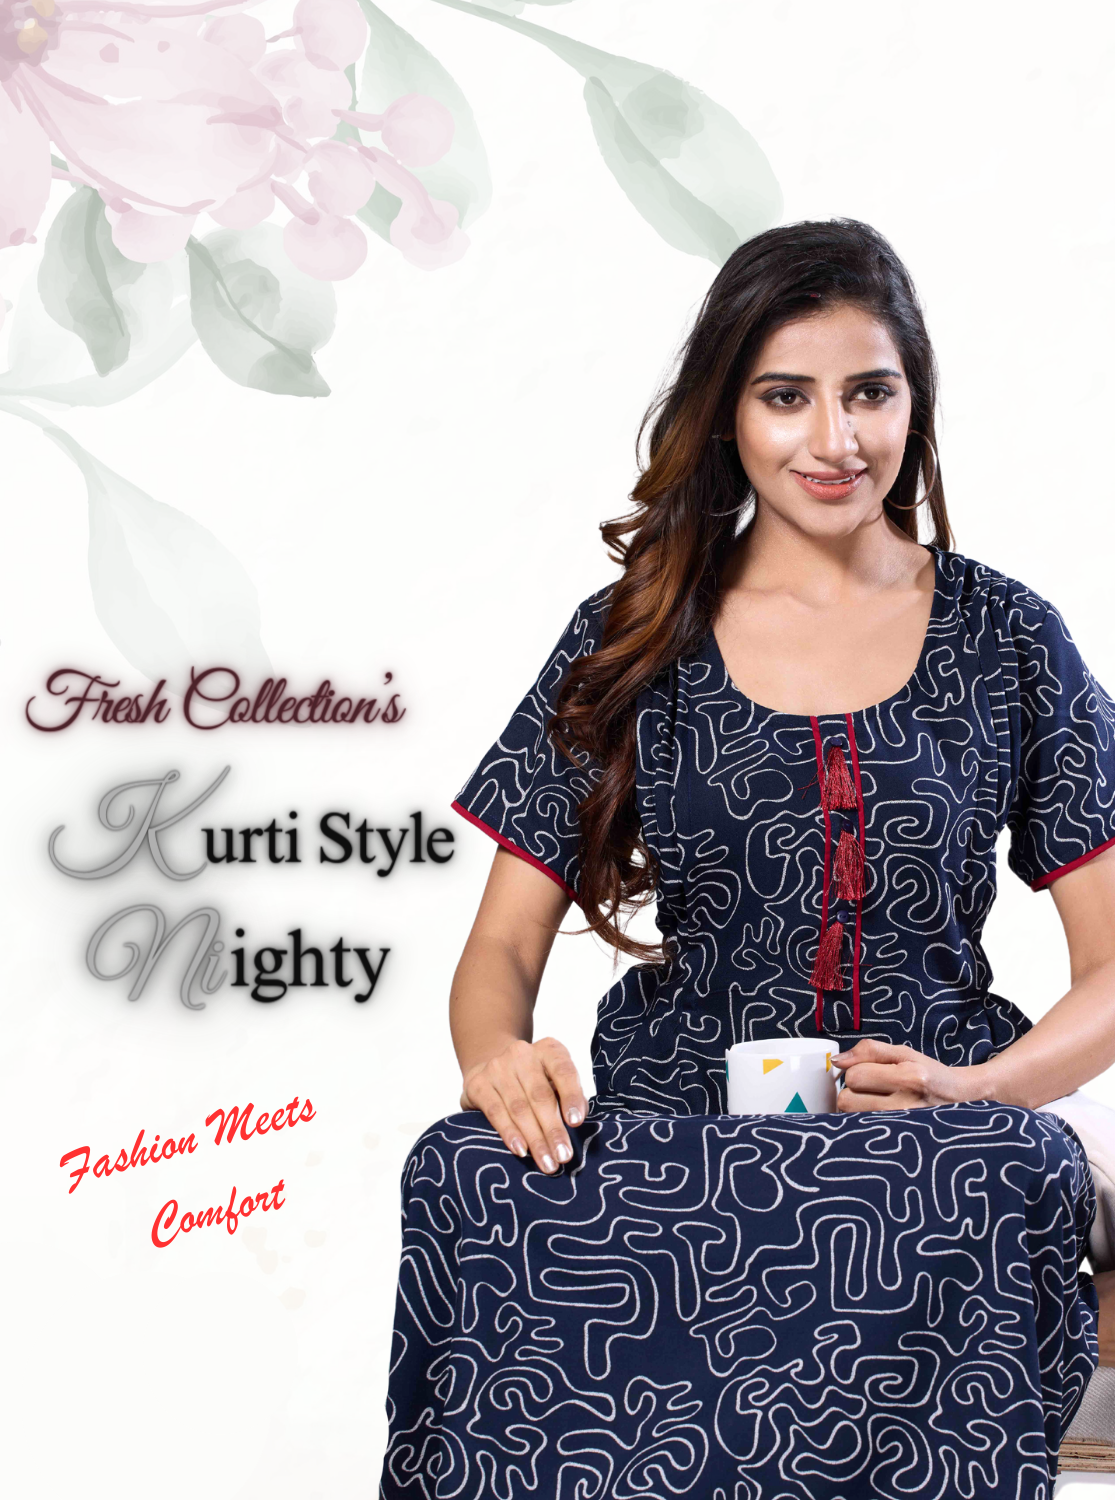 MANGAI Soft Alpine KURTI Style | Beautiful Stylish KURTI Model | Half Sleeve |Fresh Arrivals for Stylish Women's